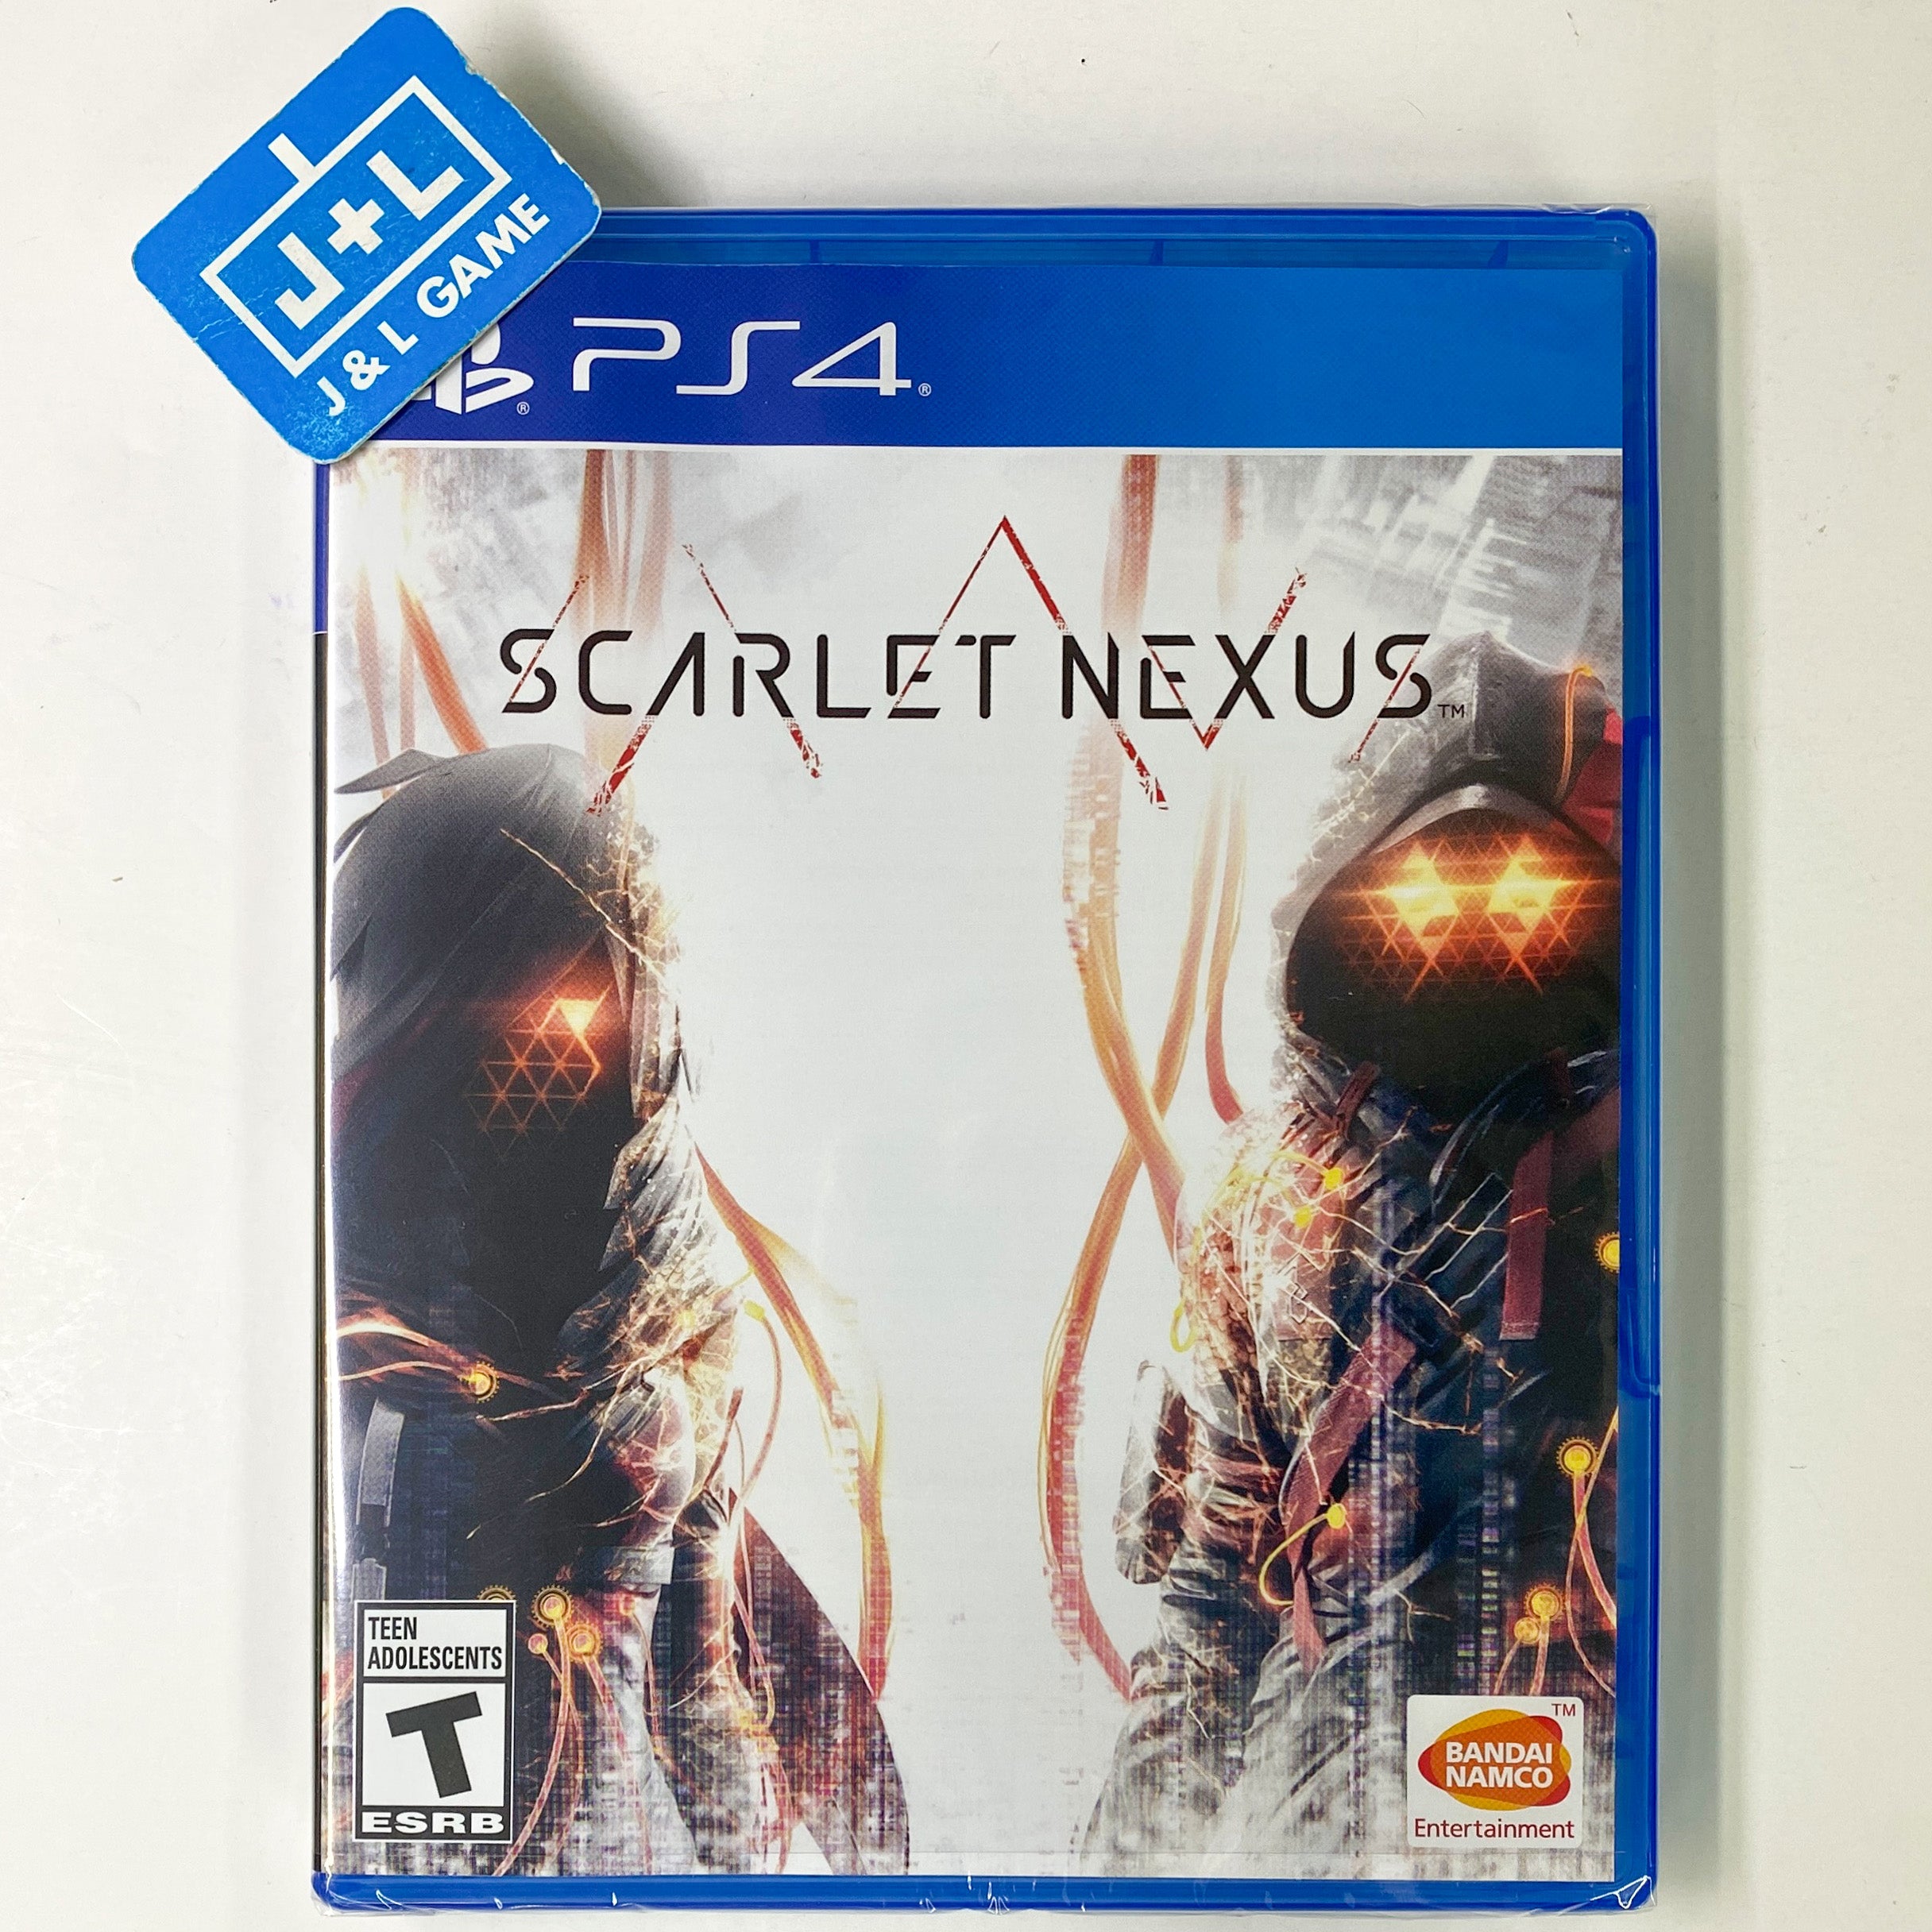 SCARLET NEXUS - (PS4) PlayStation 4 Video Games BANDAI NAMCO Entertainment   